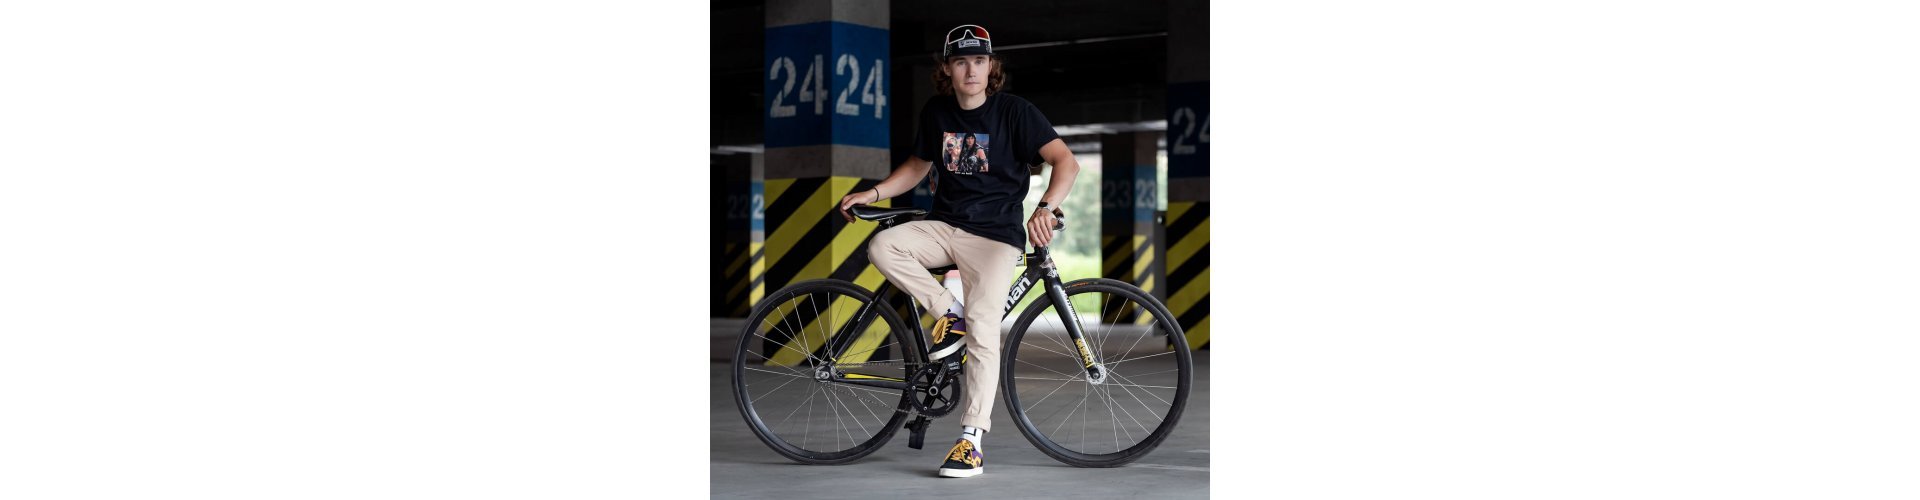 Велокроссовки в индивидуальном дизайн для Антона и его велотрюков